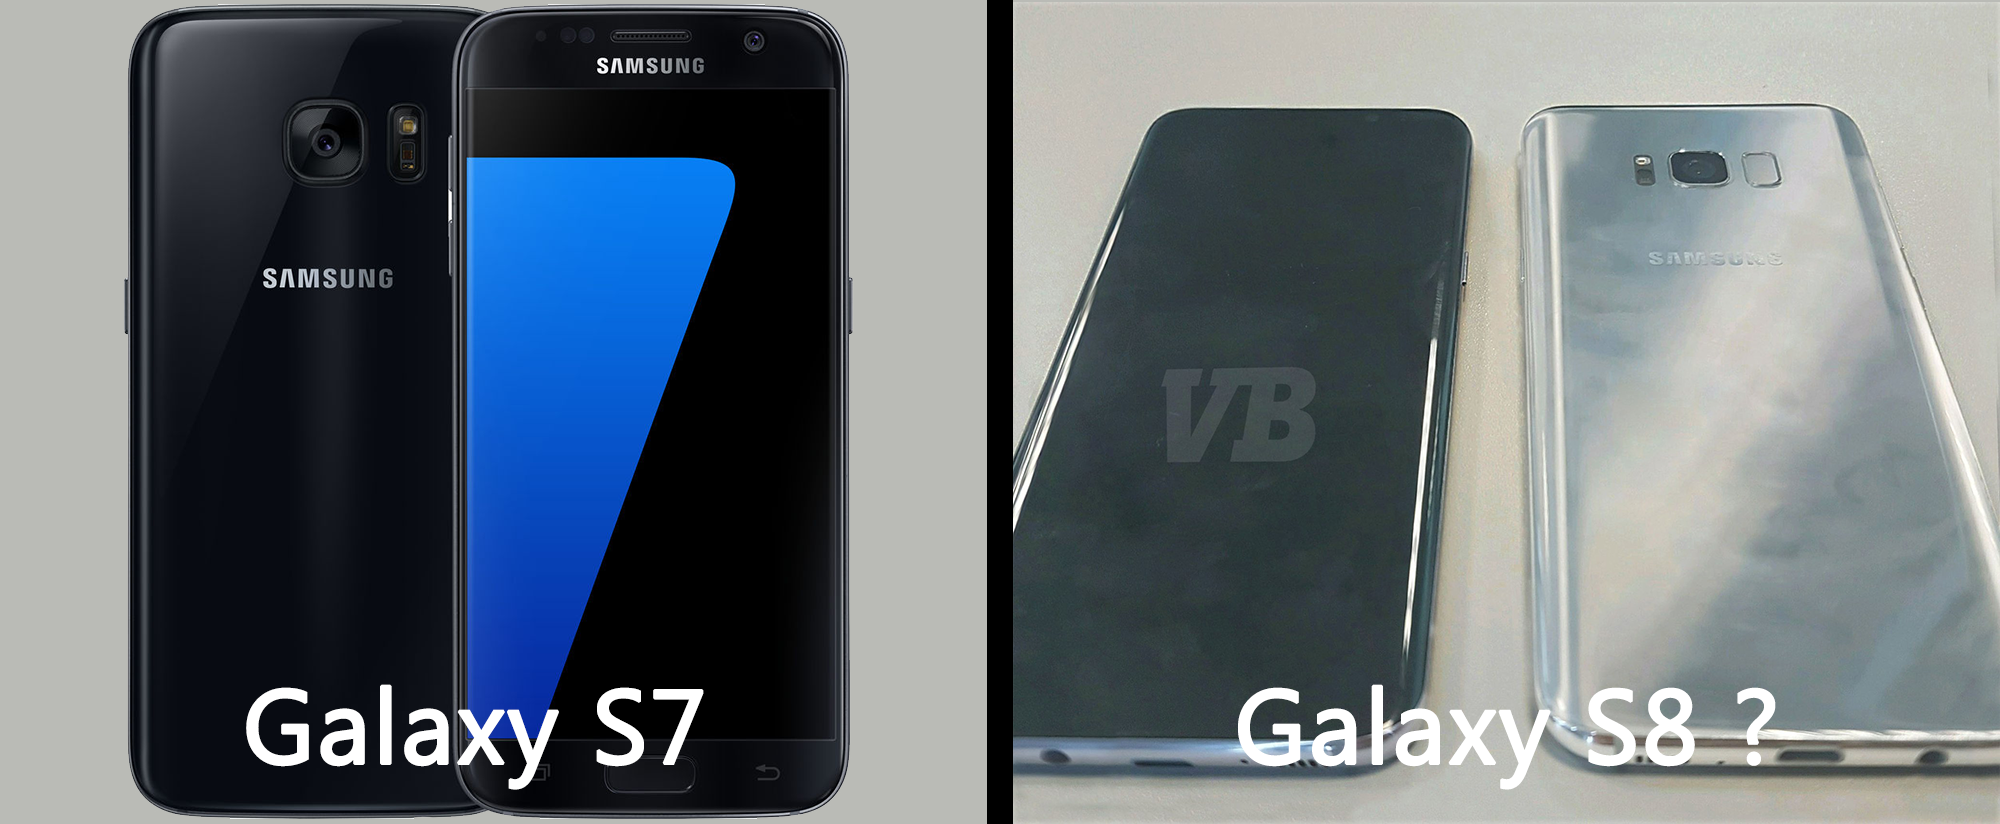 Samsung Galaxy S7 - S8